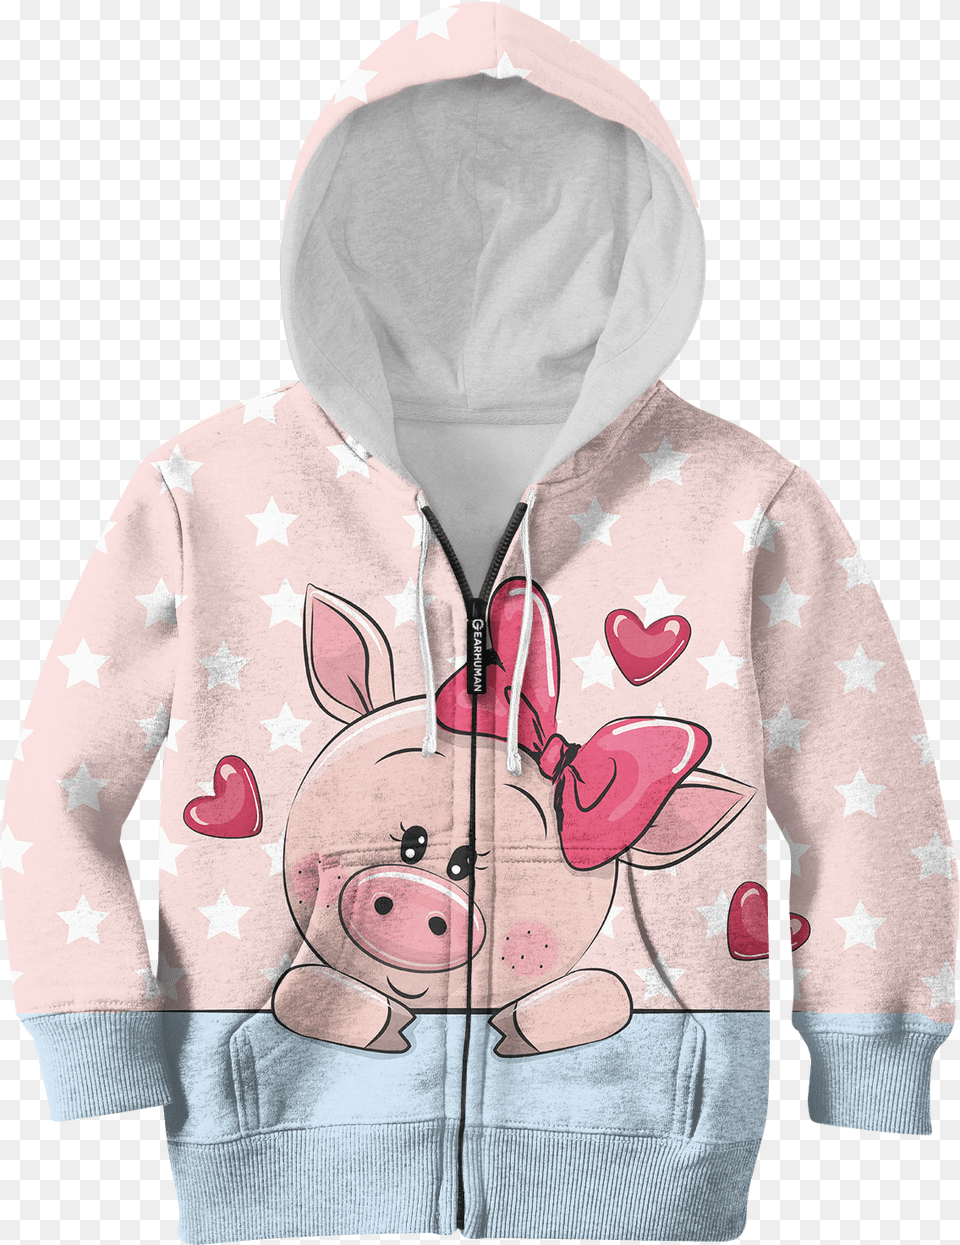 Gearhuman 3d Cute Pig With Sweet Heart Kid Custom Hoodies Hoodie, Clothing, Hood, Knitwear, Sweater Free Png